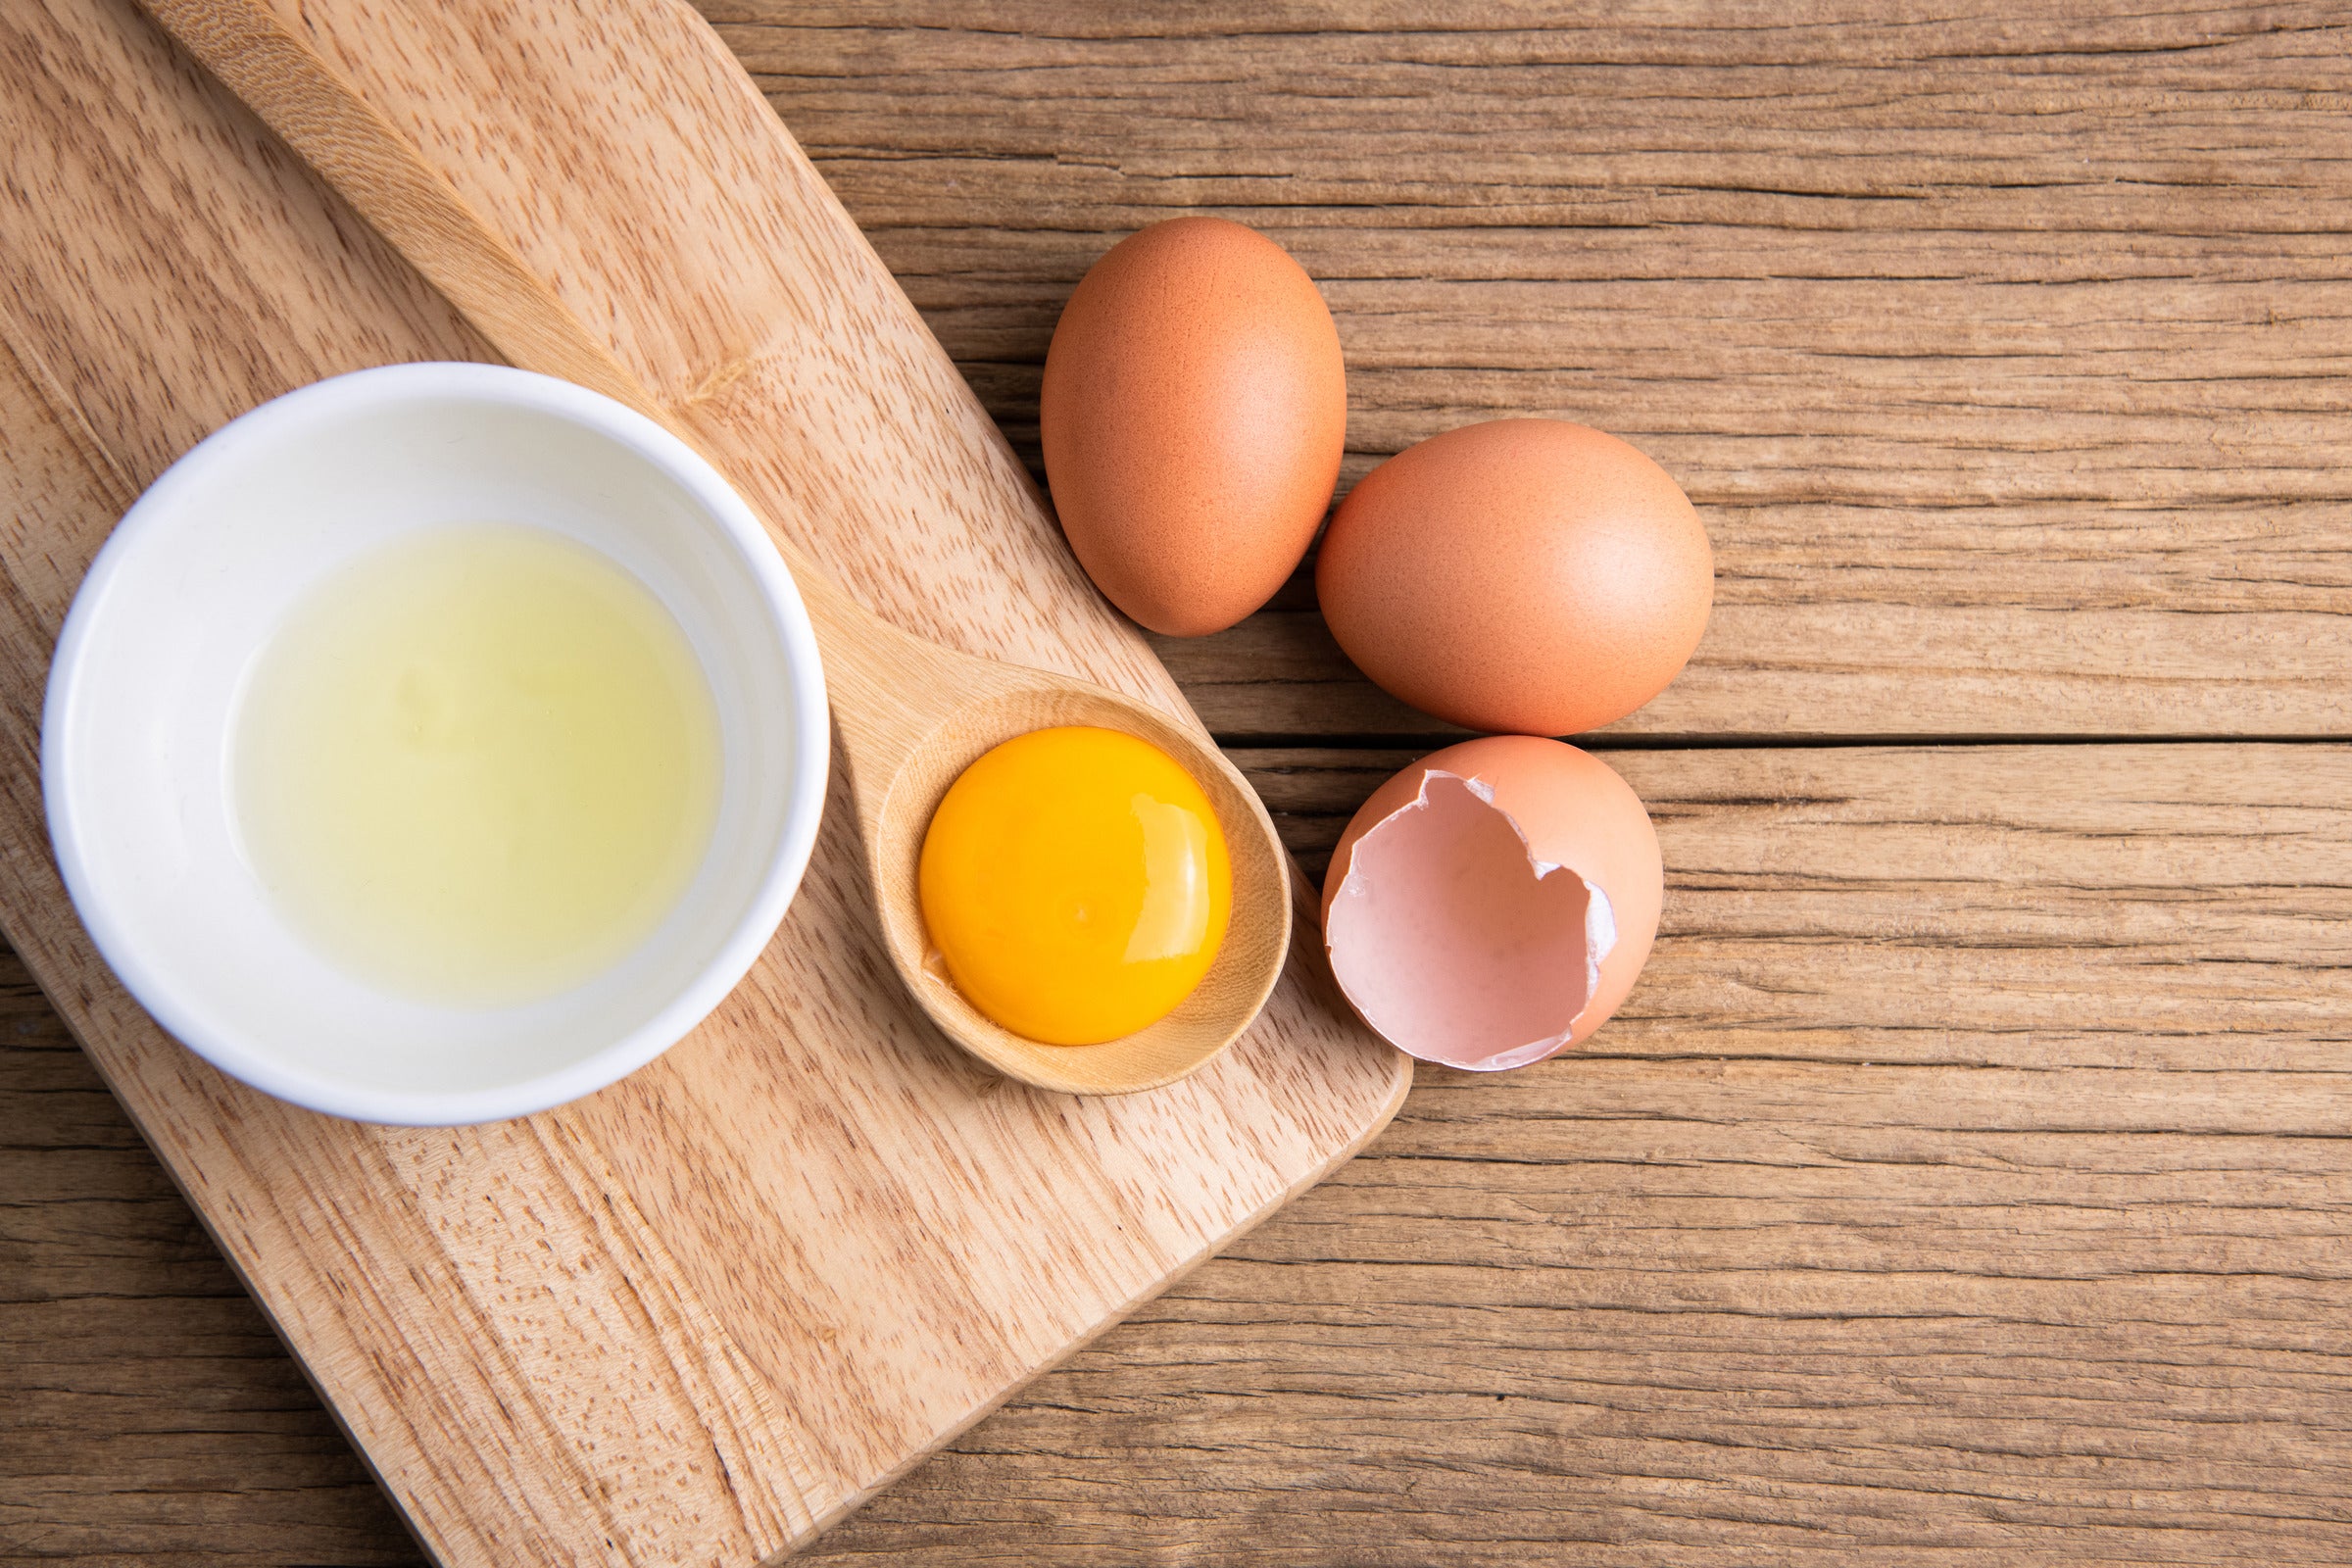 Avoid Egg Whites When Treating Oil Burns